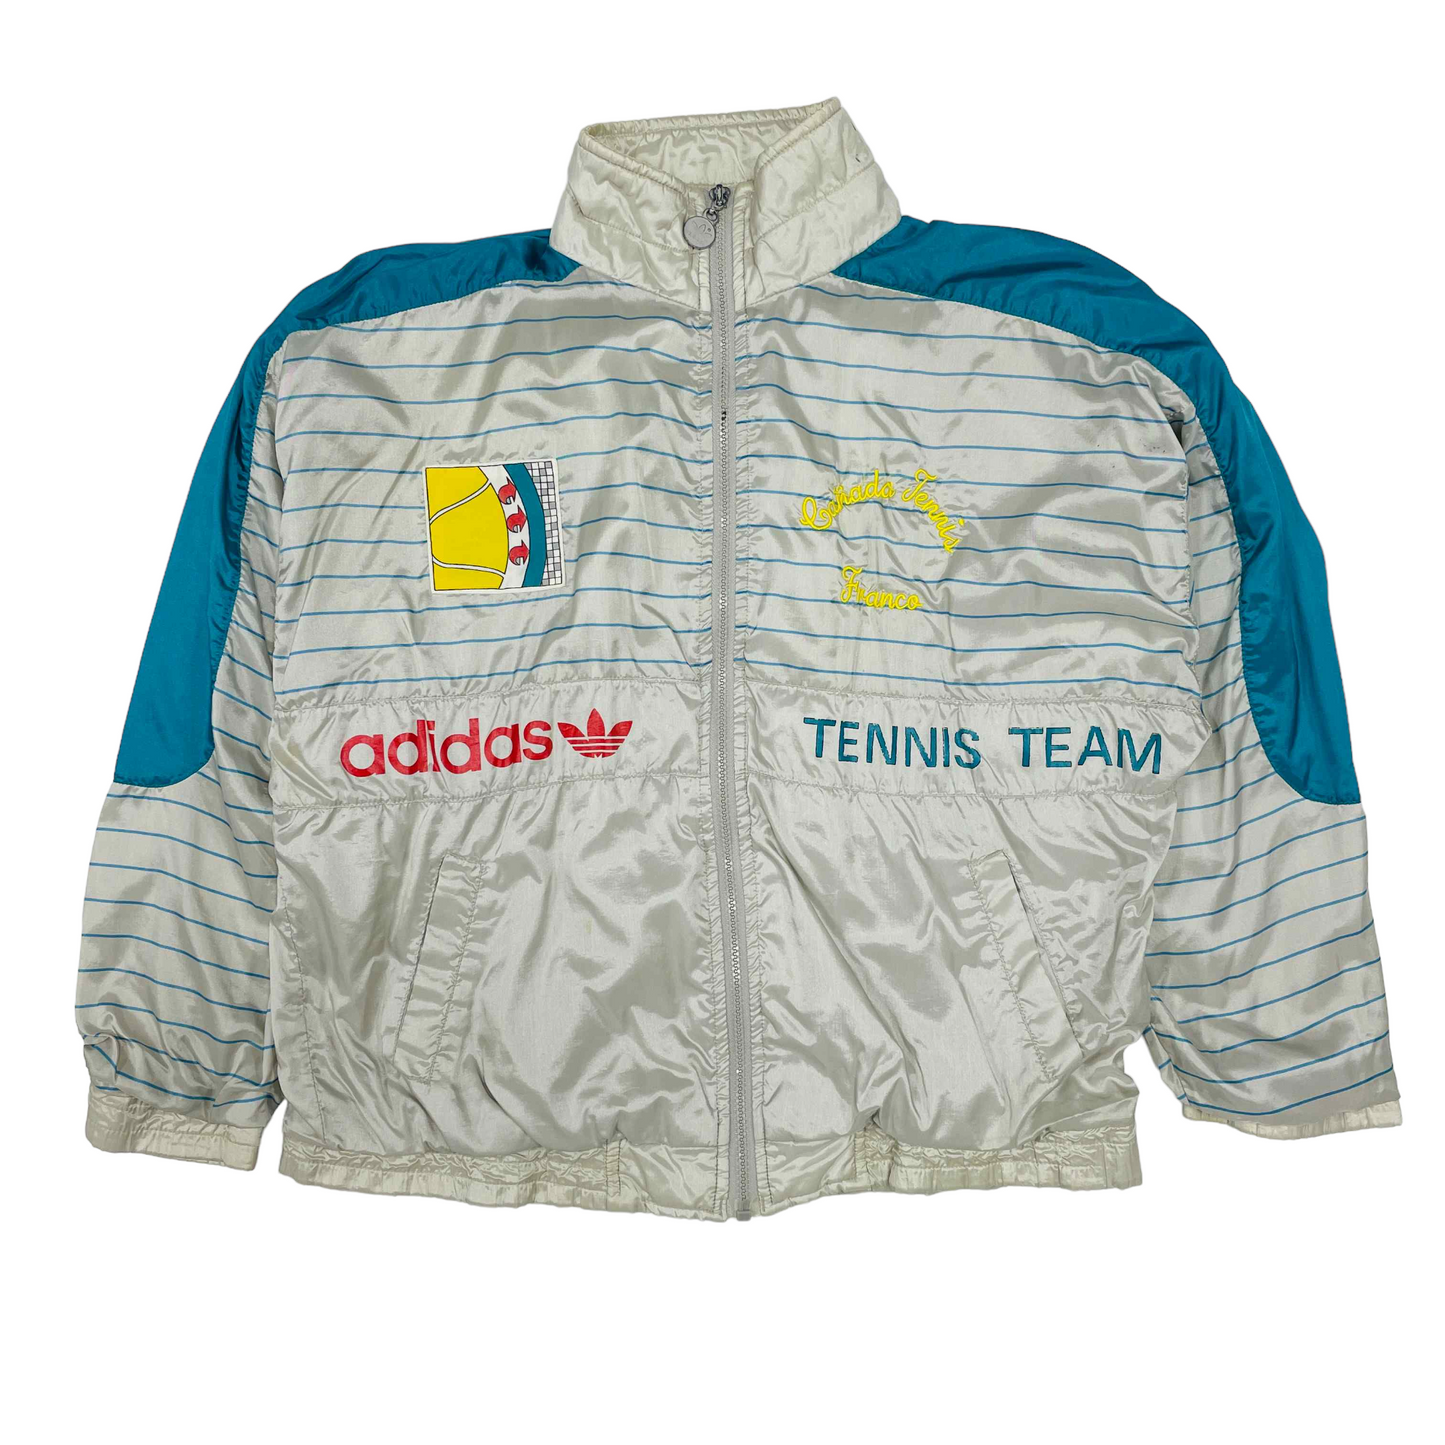 Adidas ATP Tennis Team Track Jacket   Large – Vintage Standards